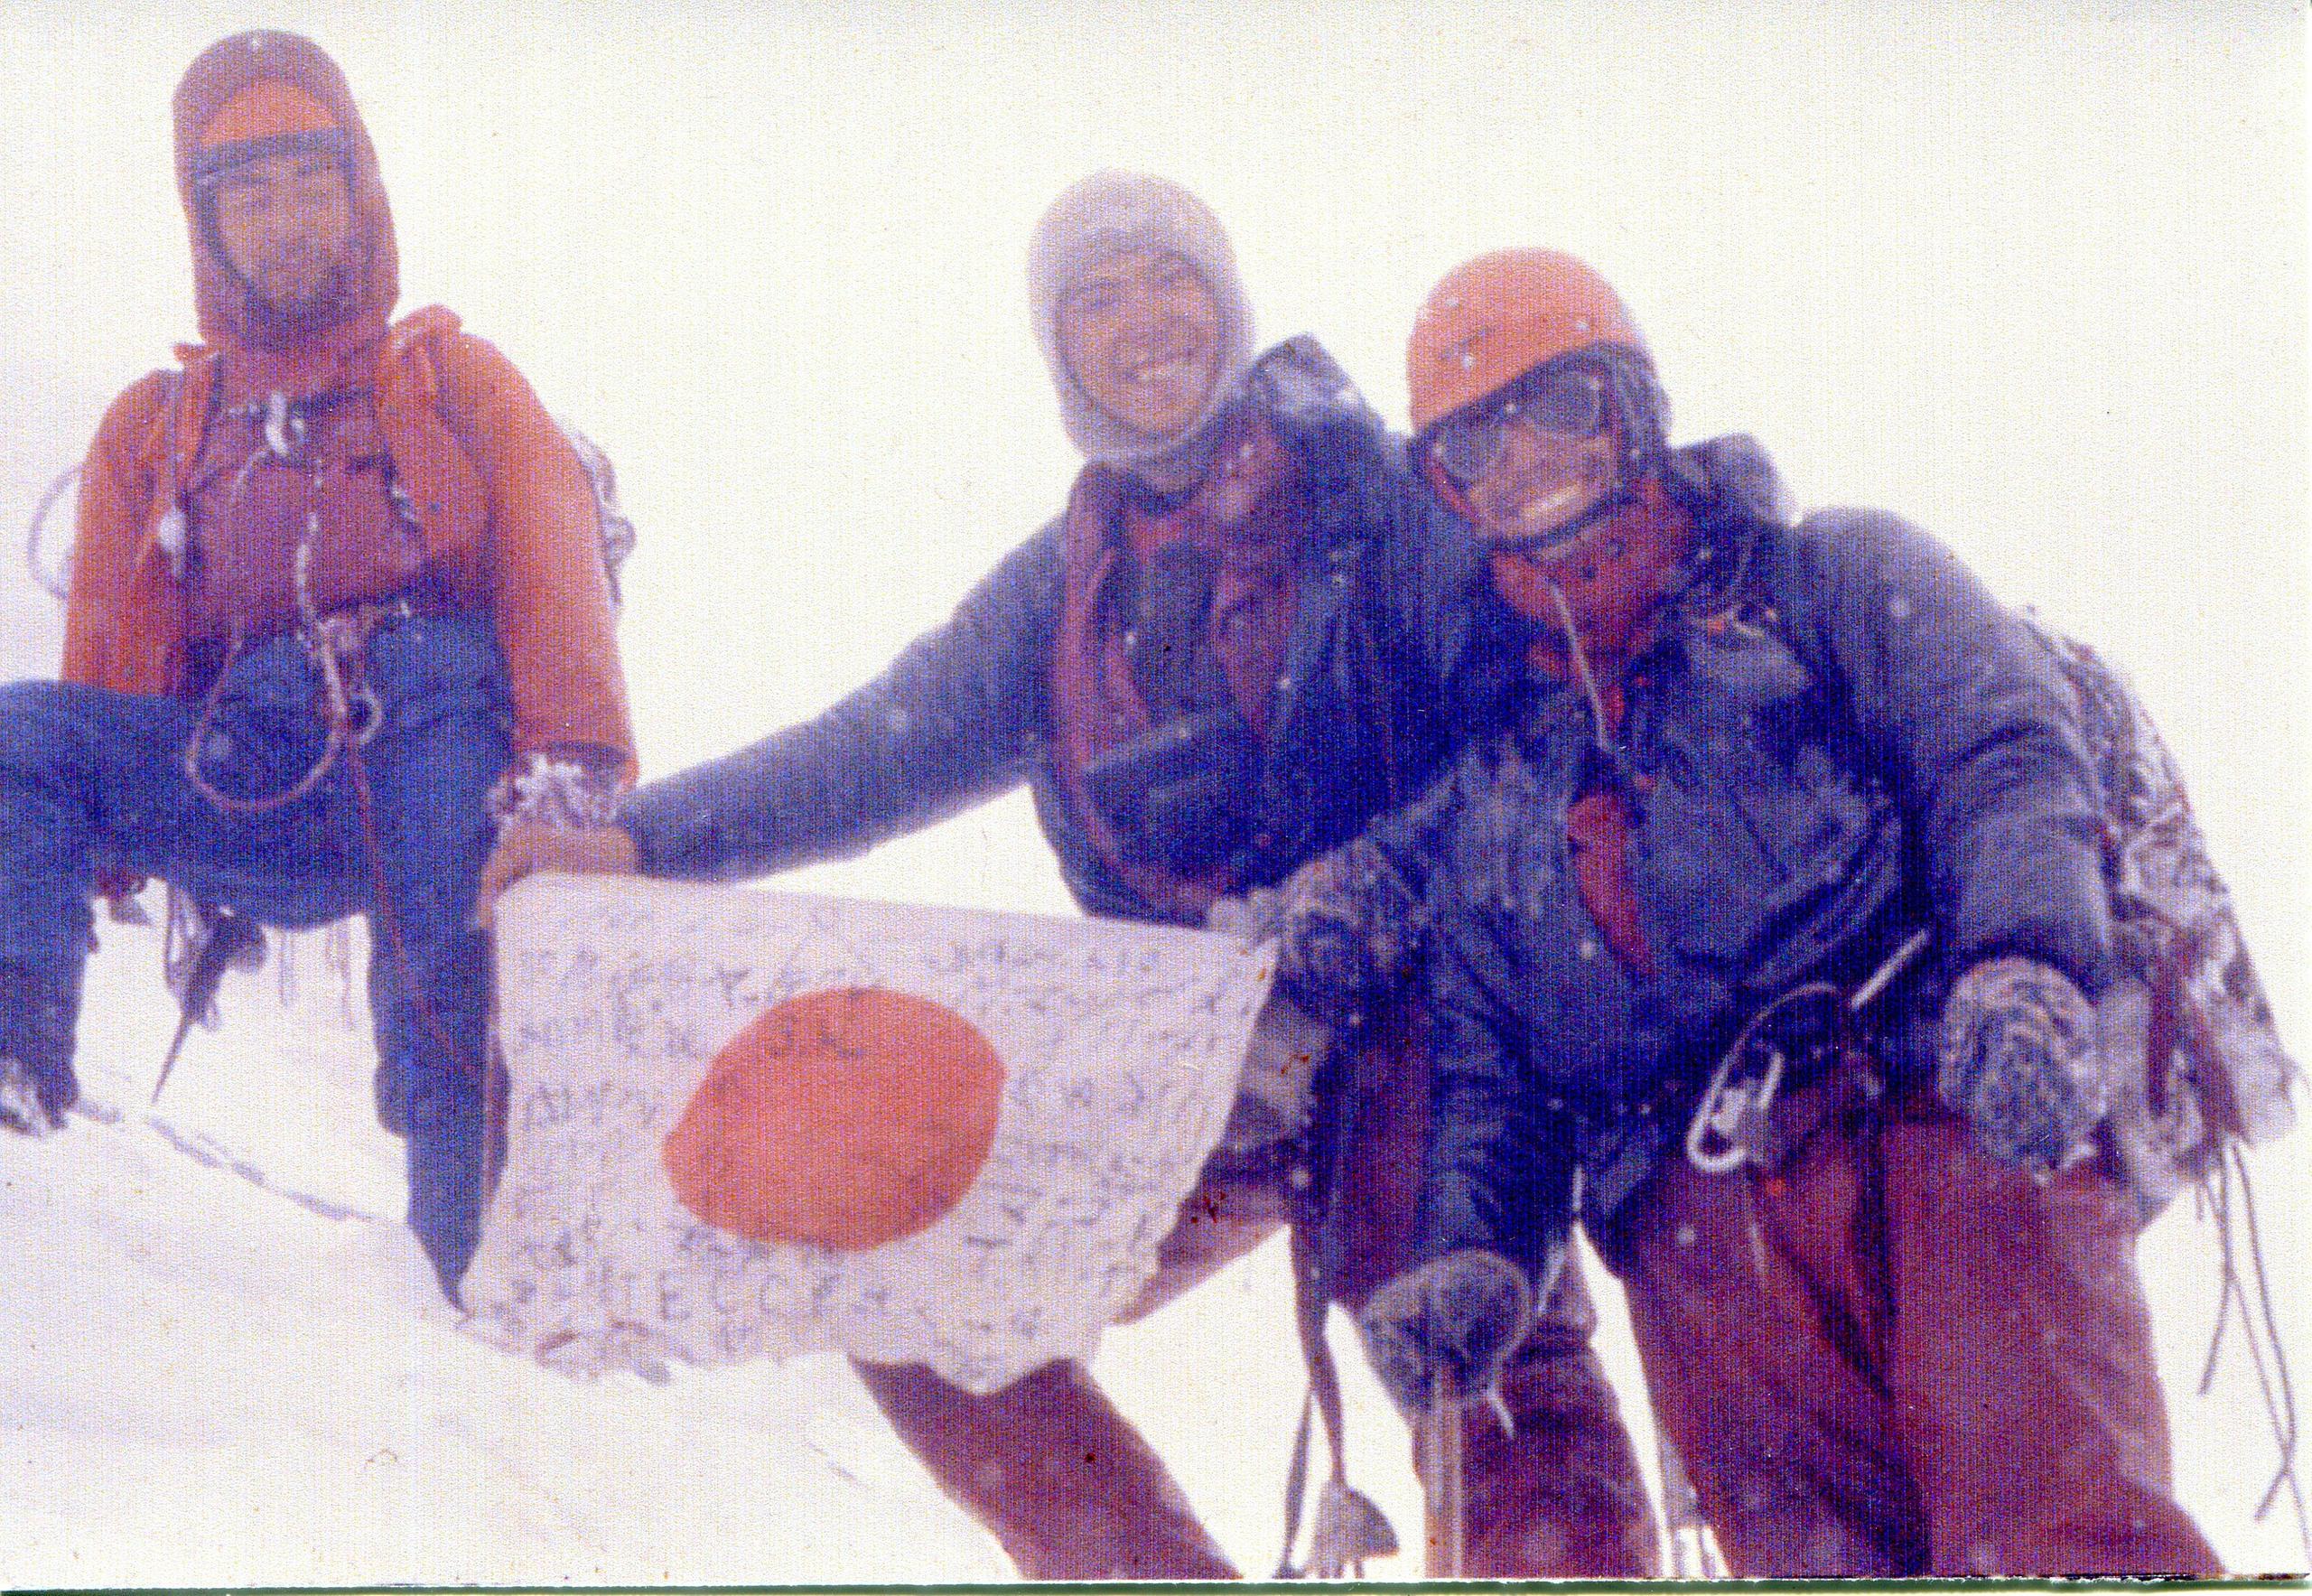 Three climbers on summit hold Japanese flag